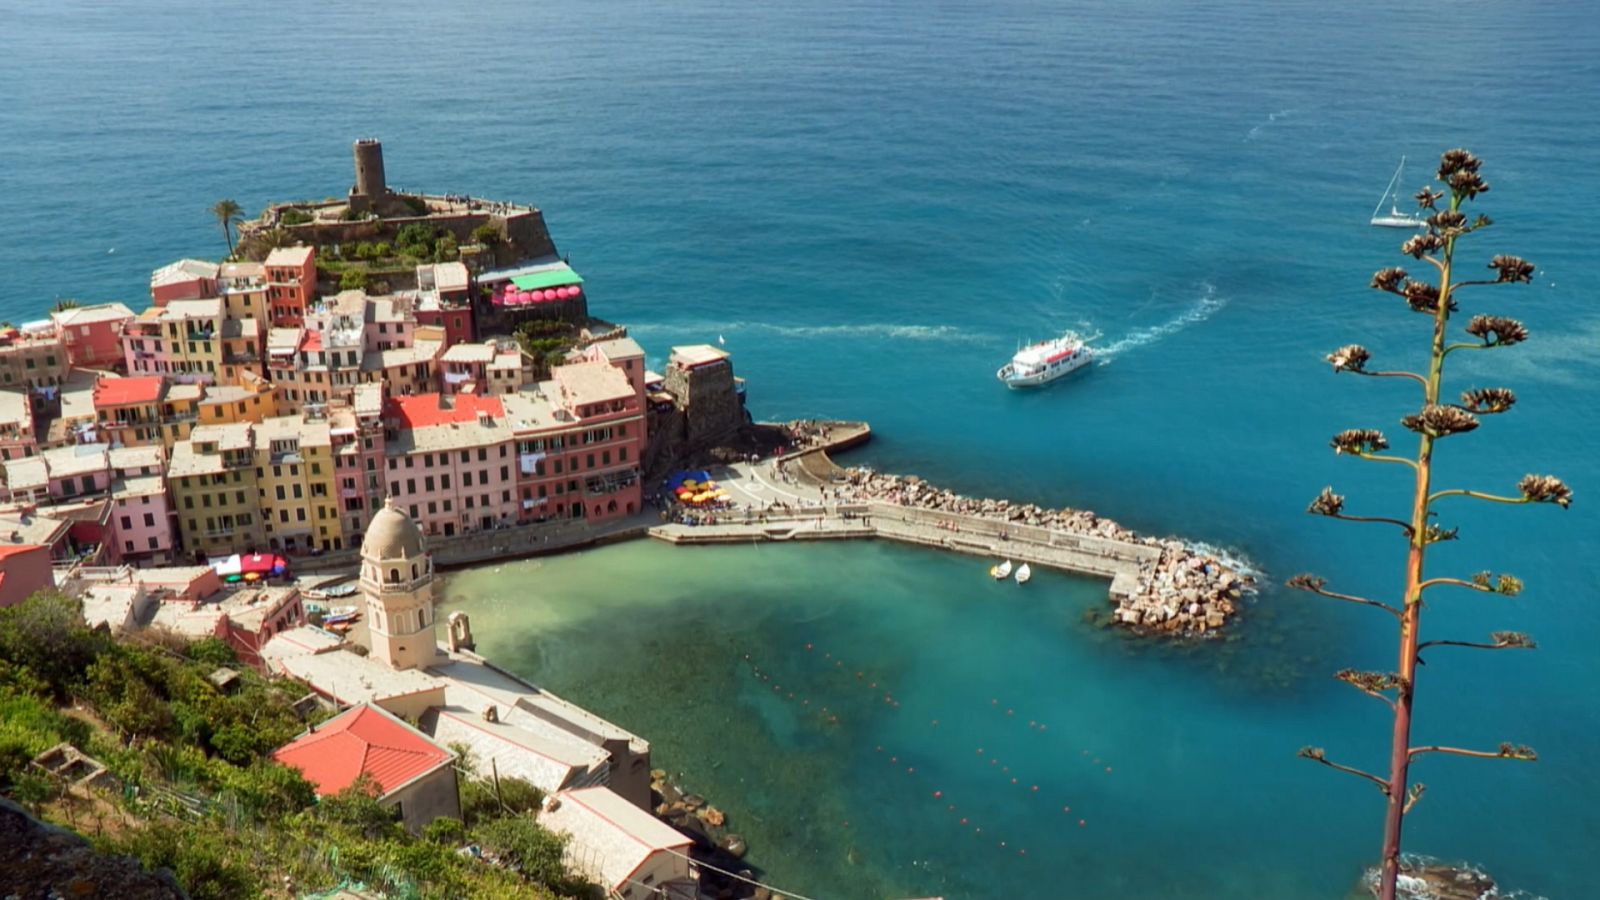 Rick Steves por Europa - T8 - Episodio 7: La Riviera italiana: Cinque Terre - ver ahora